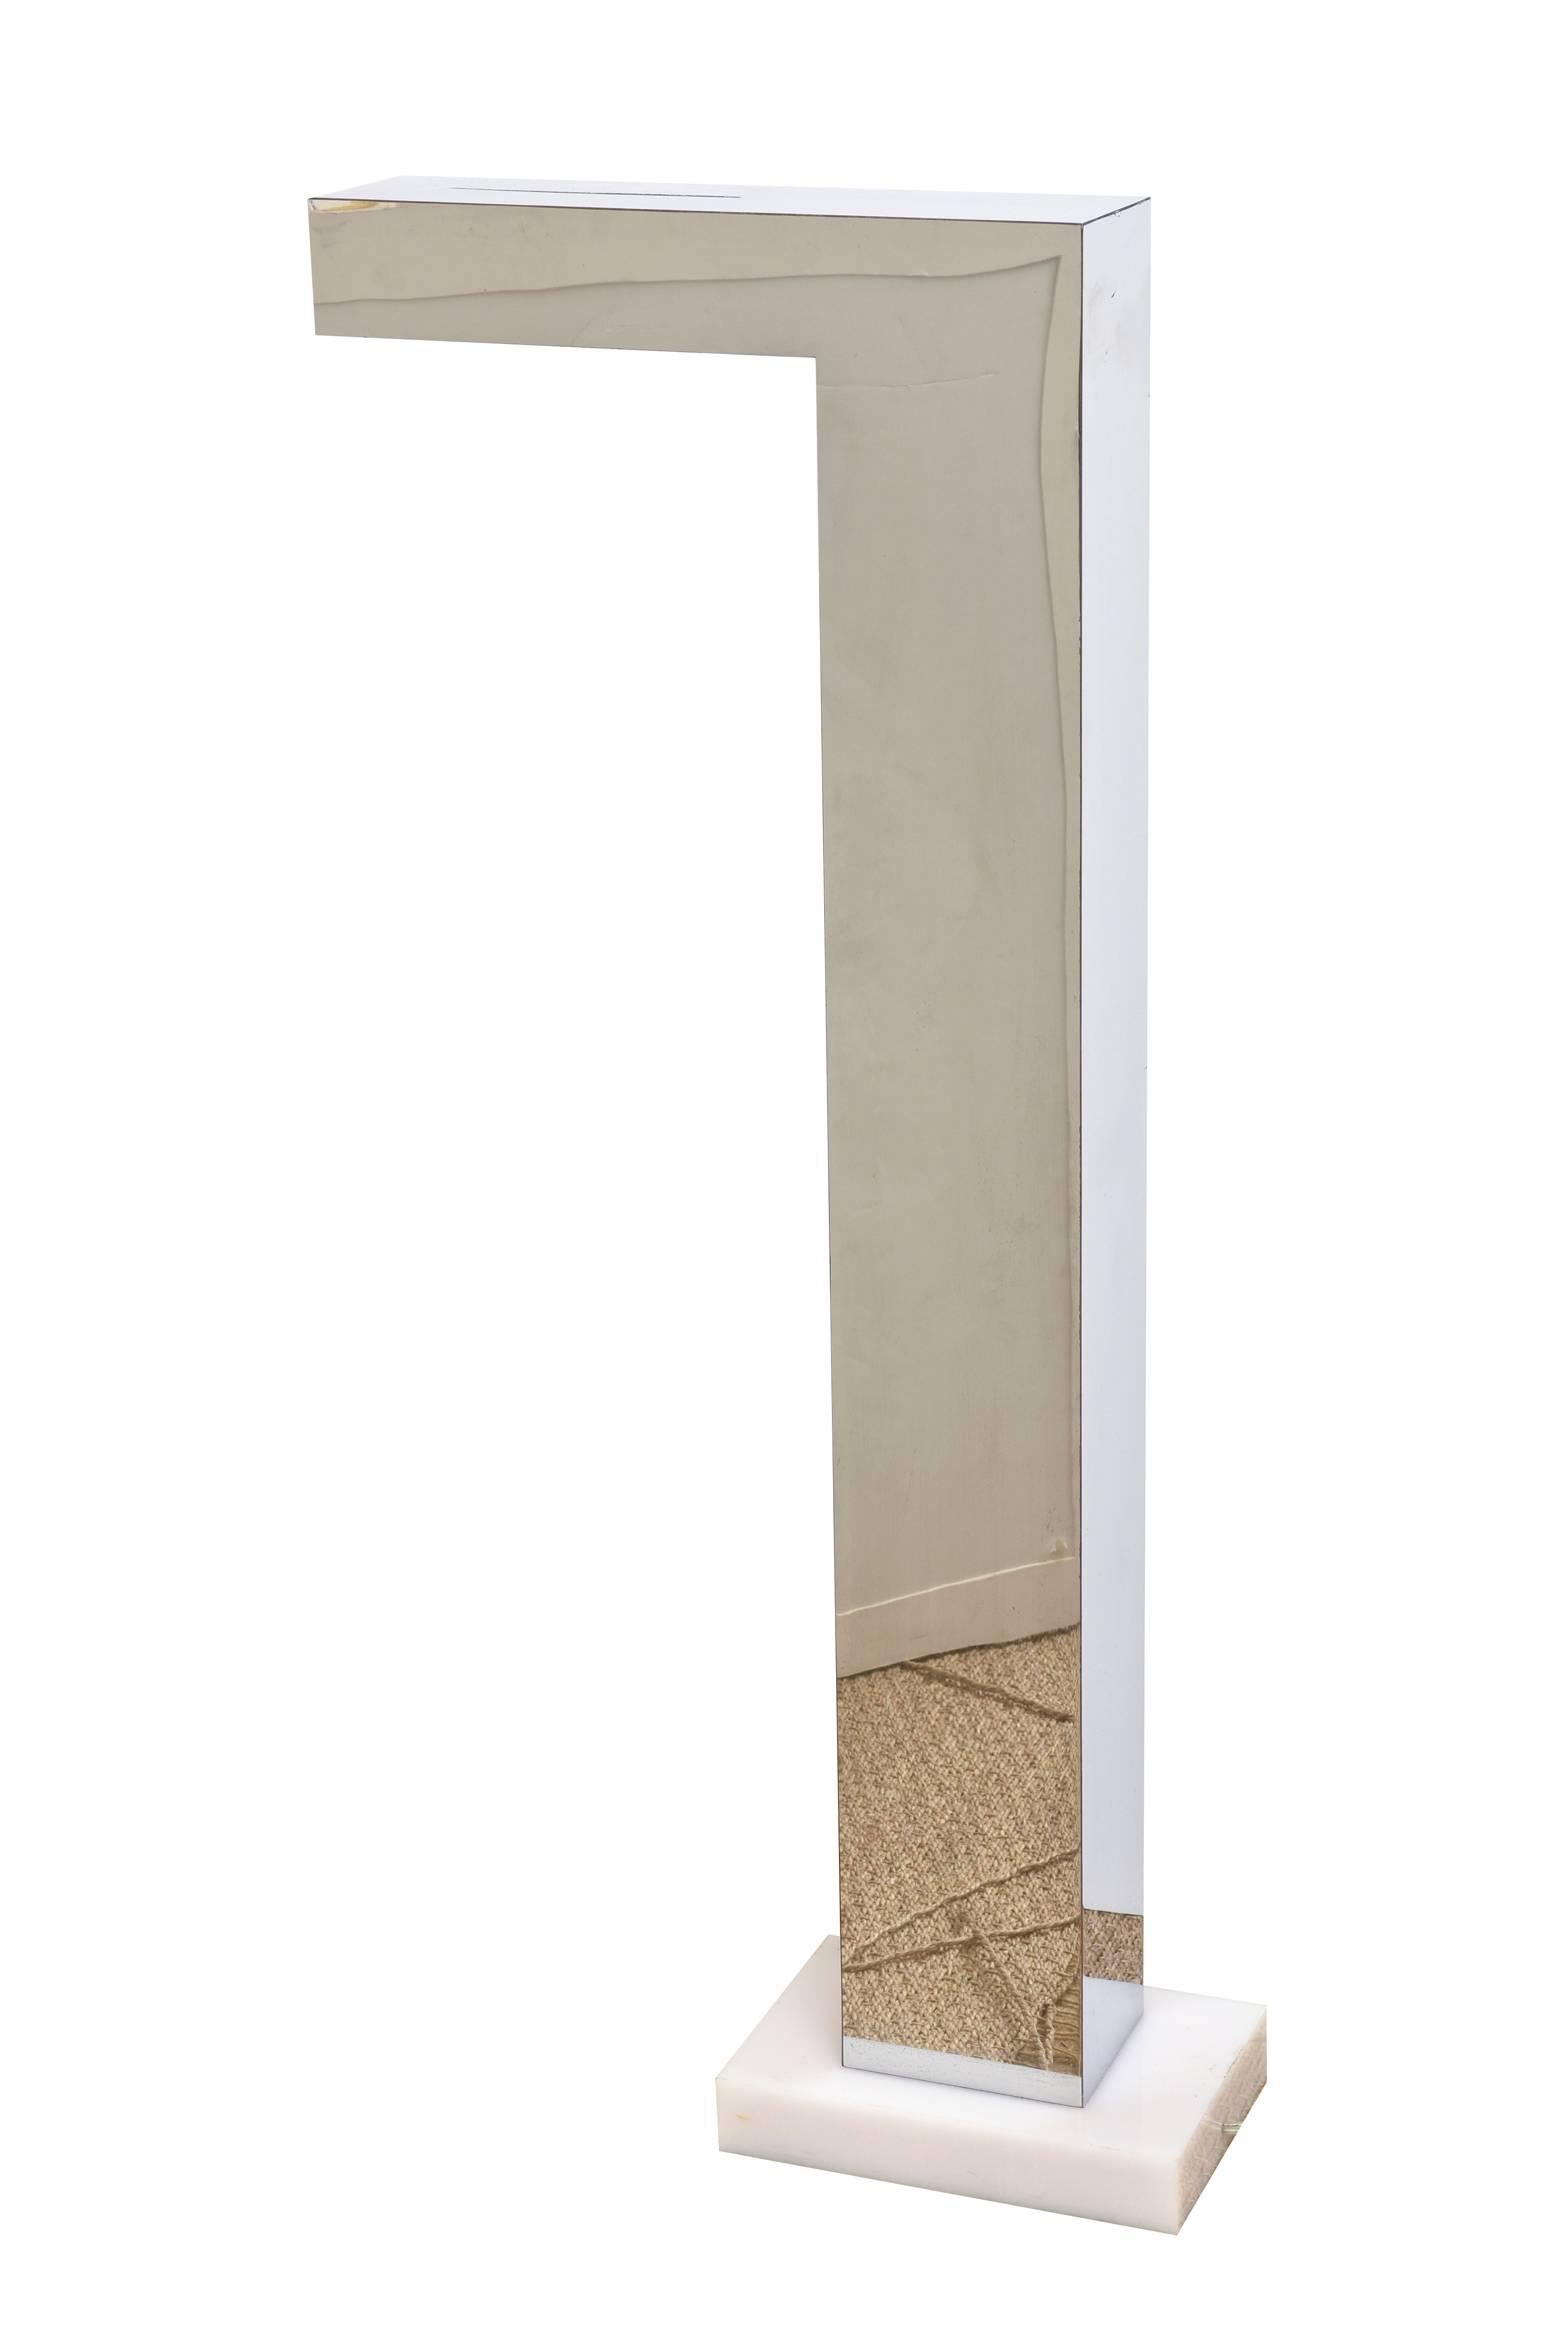 Cette paire sculpturale de petits lampadaires vintage Whiting chromés repose sur un socle en résine blanche. La latte située sur le dessus laisse passer la lumière. Il est équipé d'une ampoule halogène. Il s'agit d'une forme I.L.A. inversée. Paire